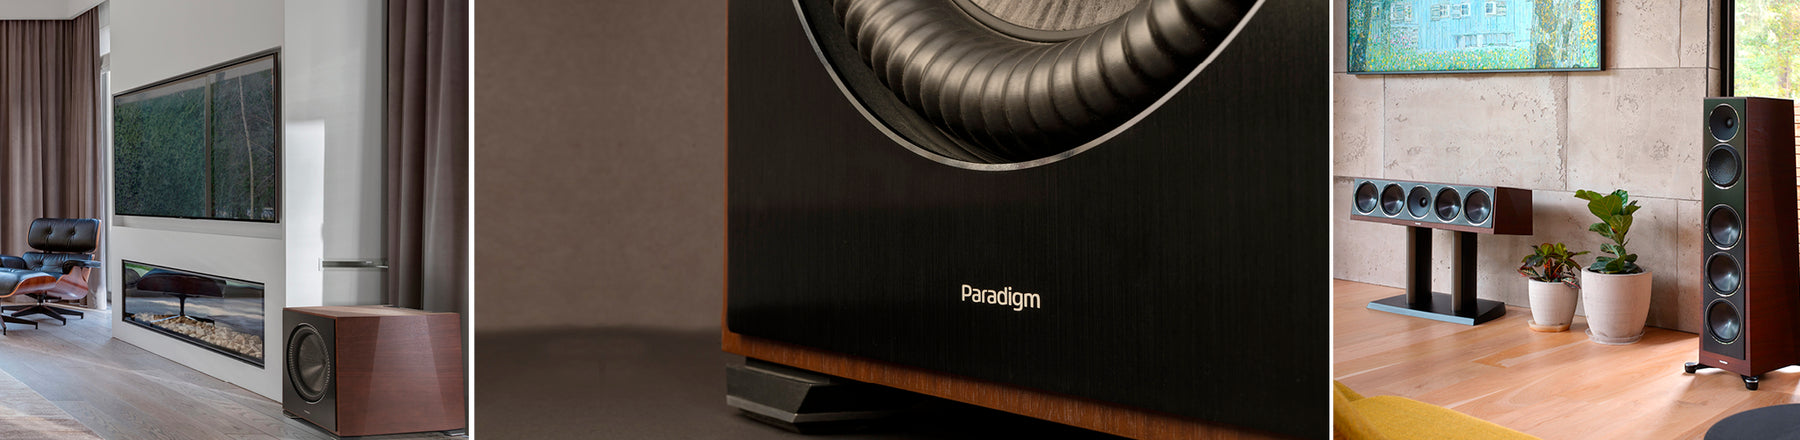 Paradigm | BAX Audio Video